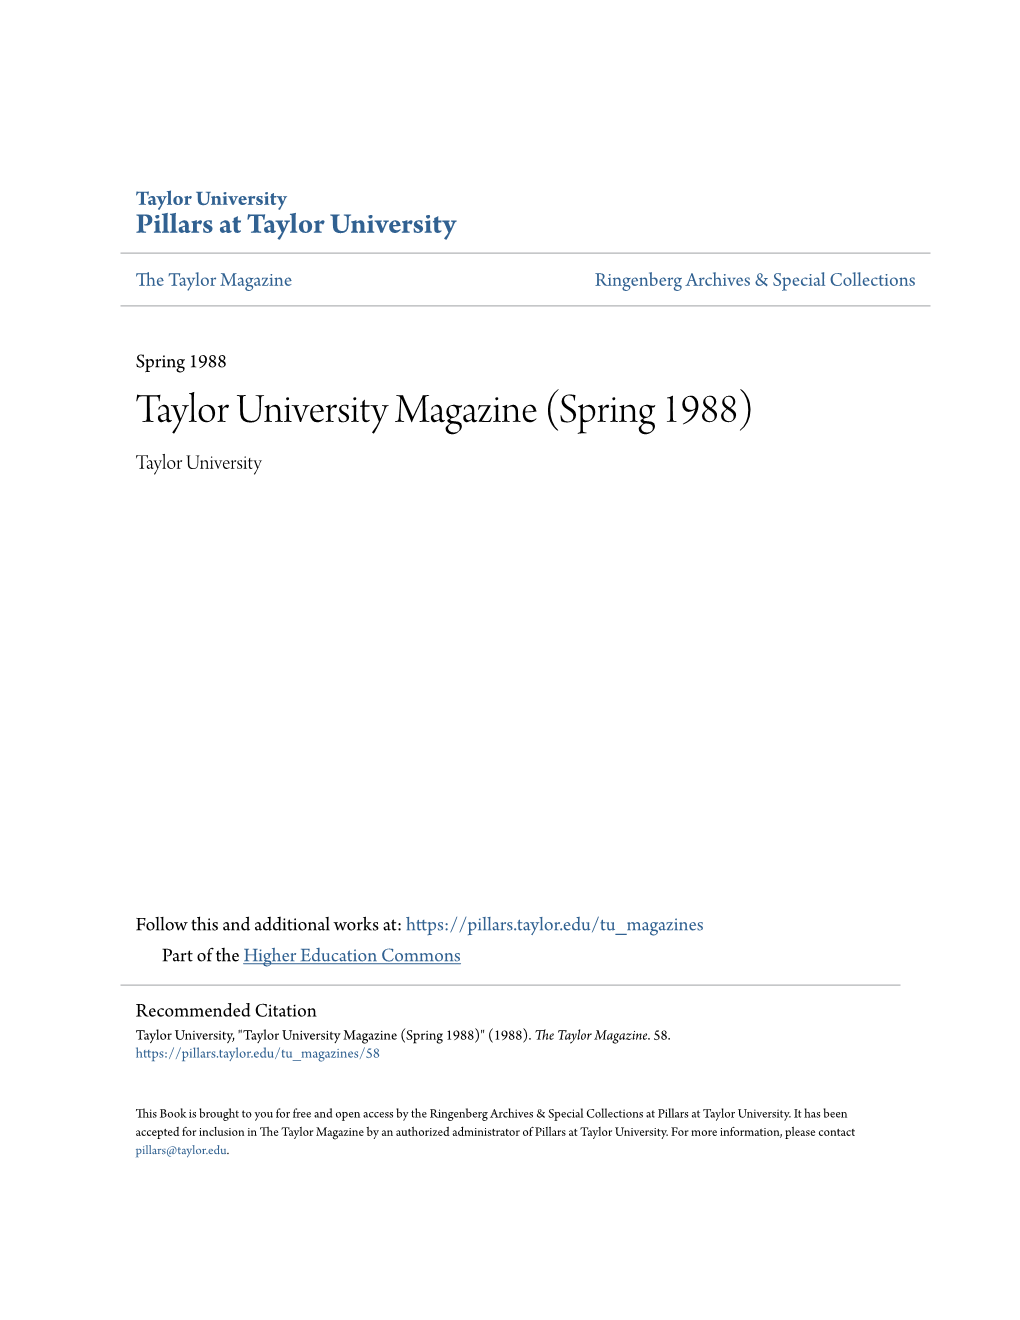 Taylor University Magazine (Spring 1988) Taylor University